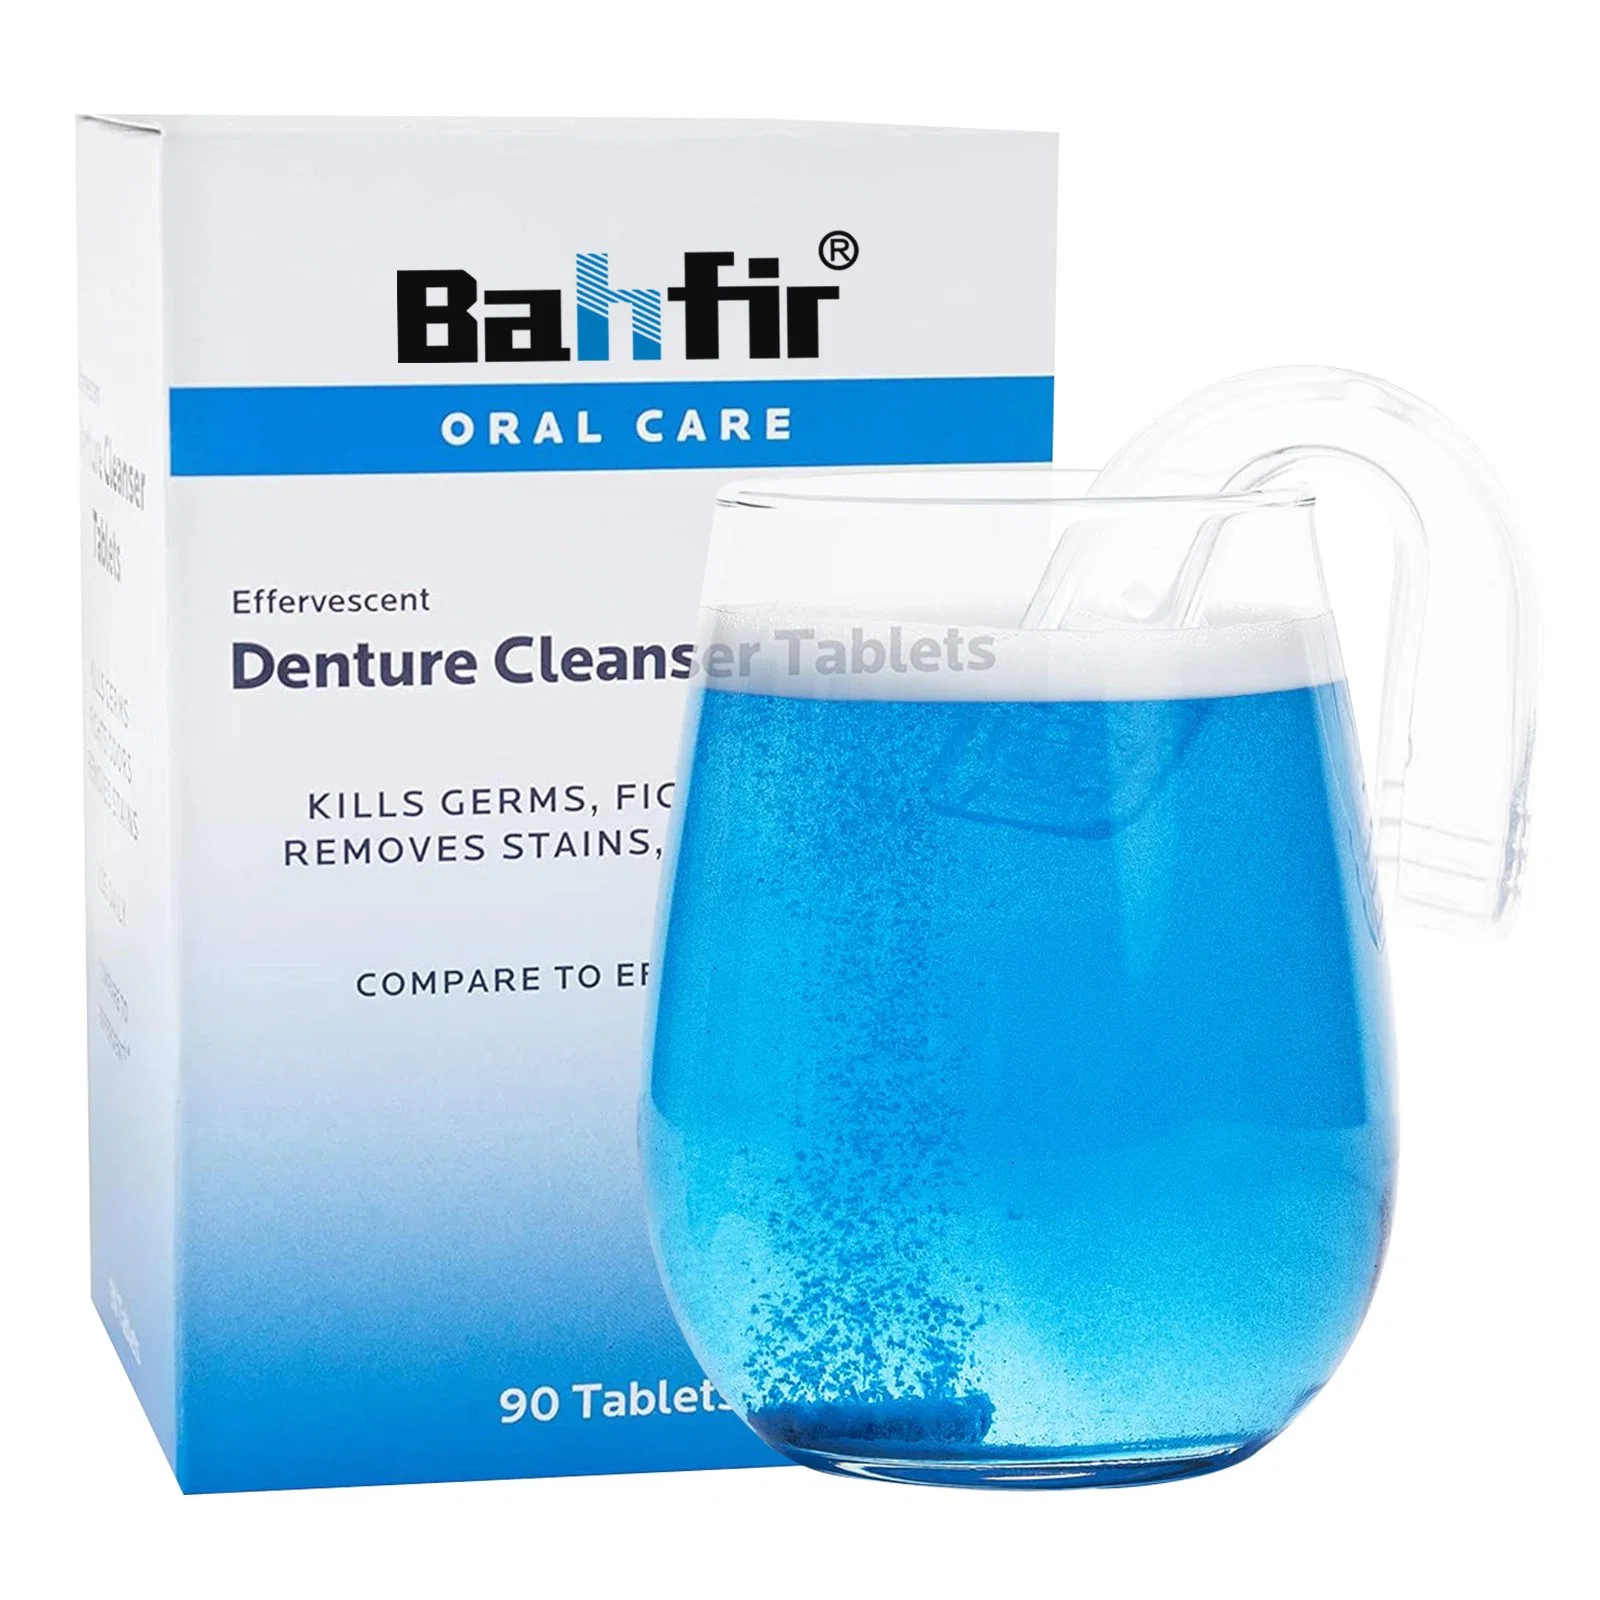 Pastillas de Limpieza de retenedor, un producto para limpiar, blanquear y desinfectar sus aparatos dentales durante la noche